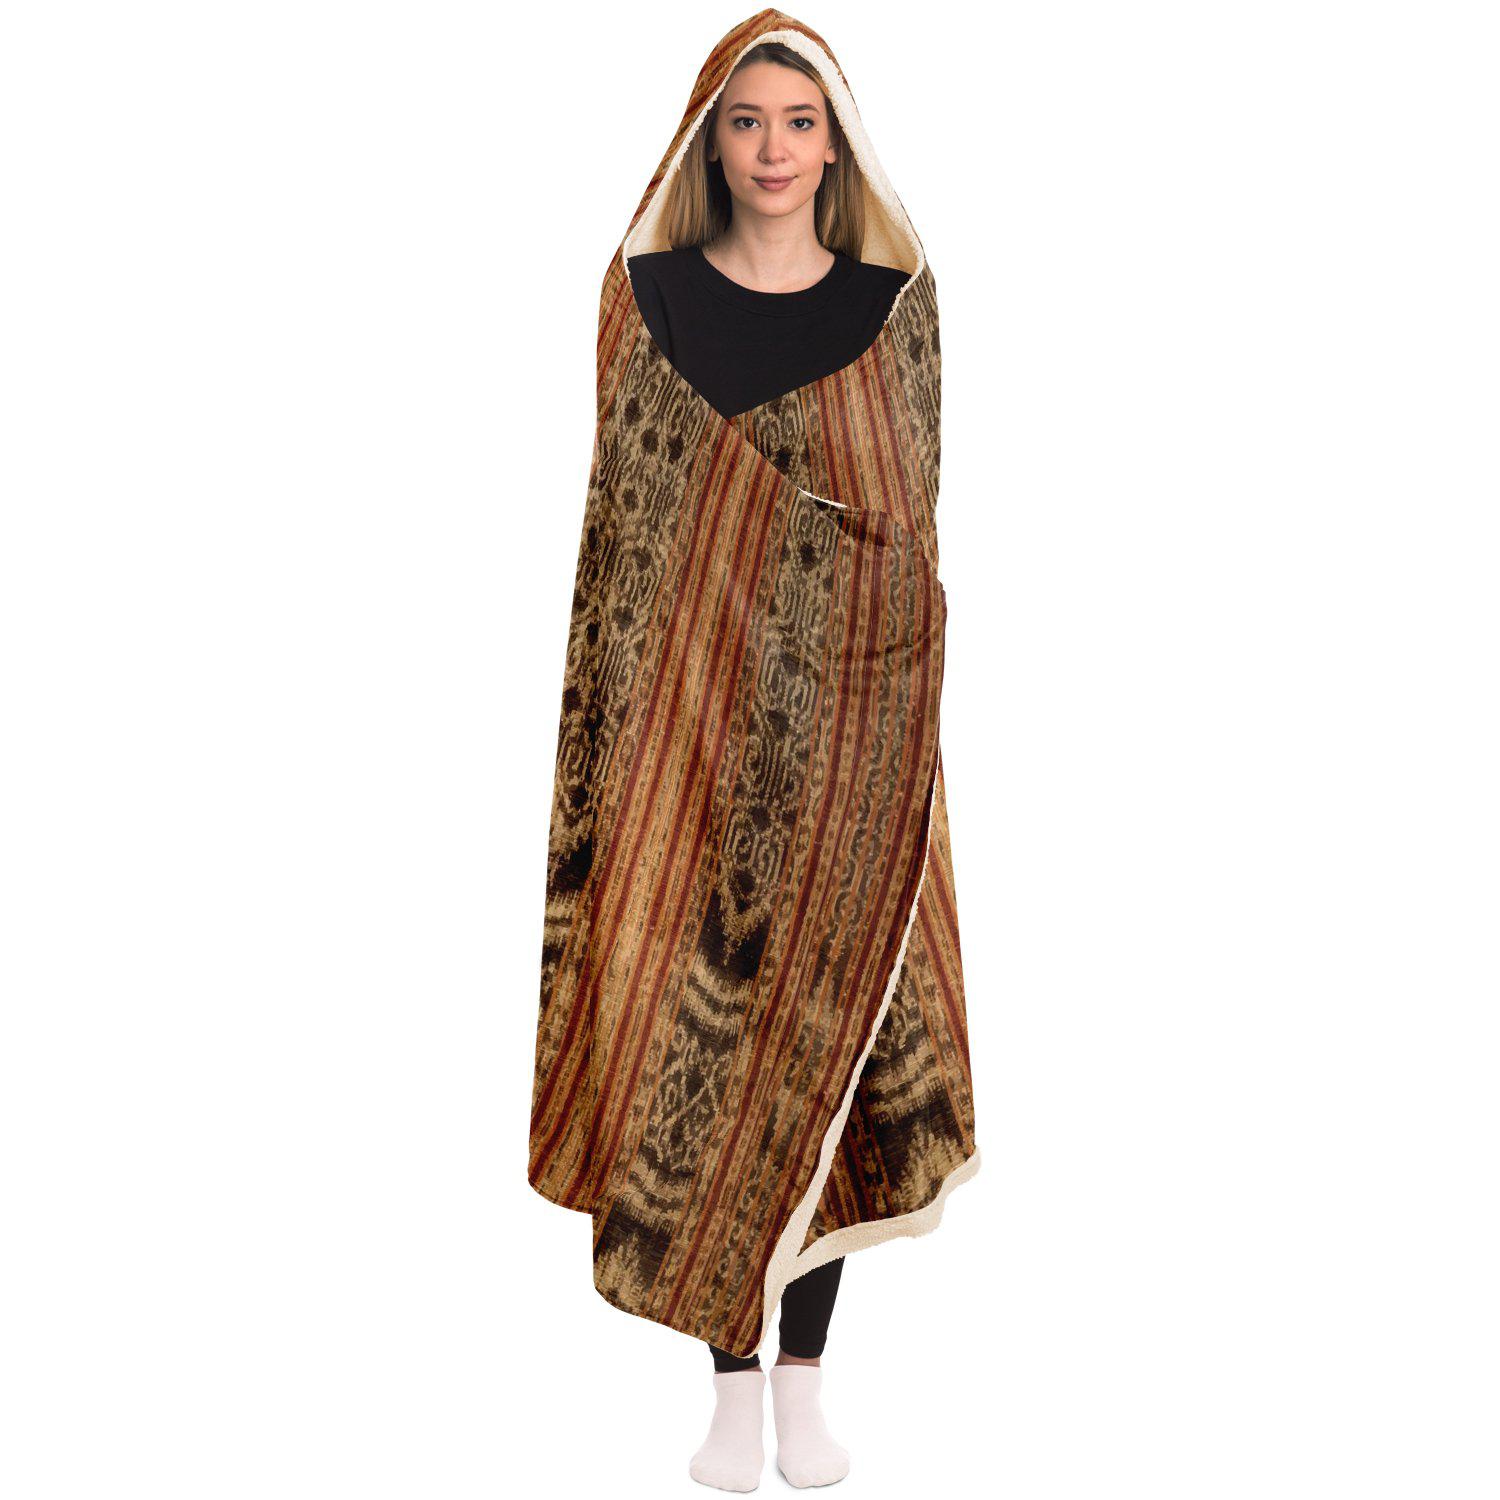 Hooded Blanket - AOP Indonesian Ikat Hooded Blanket